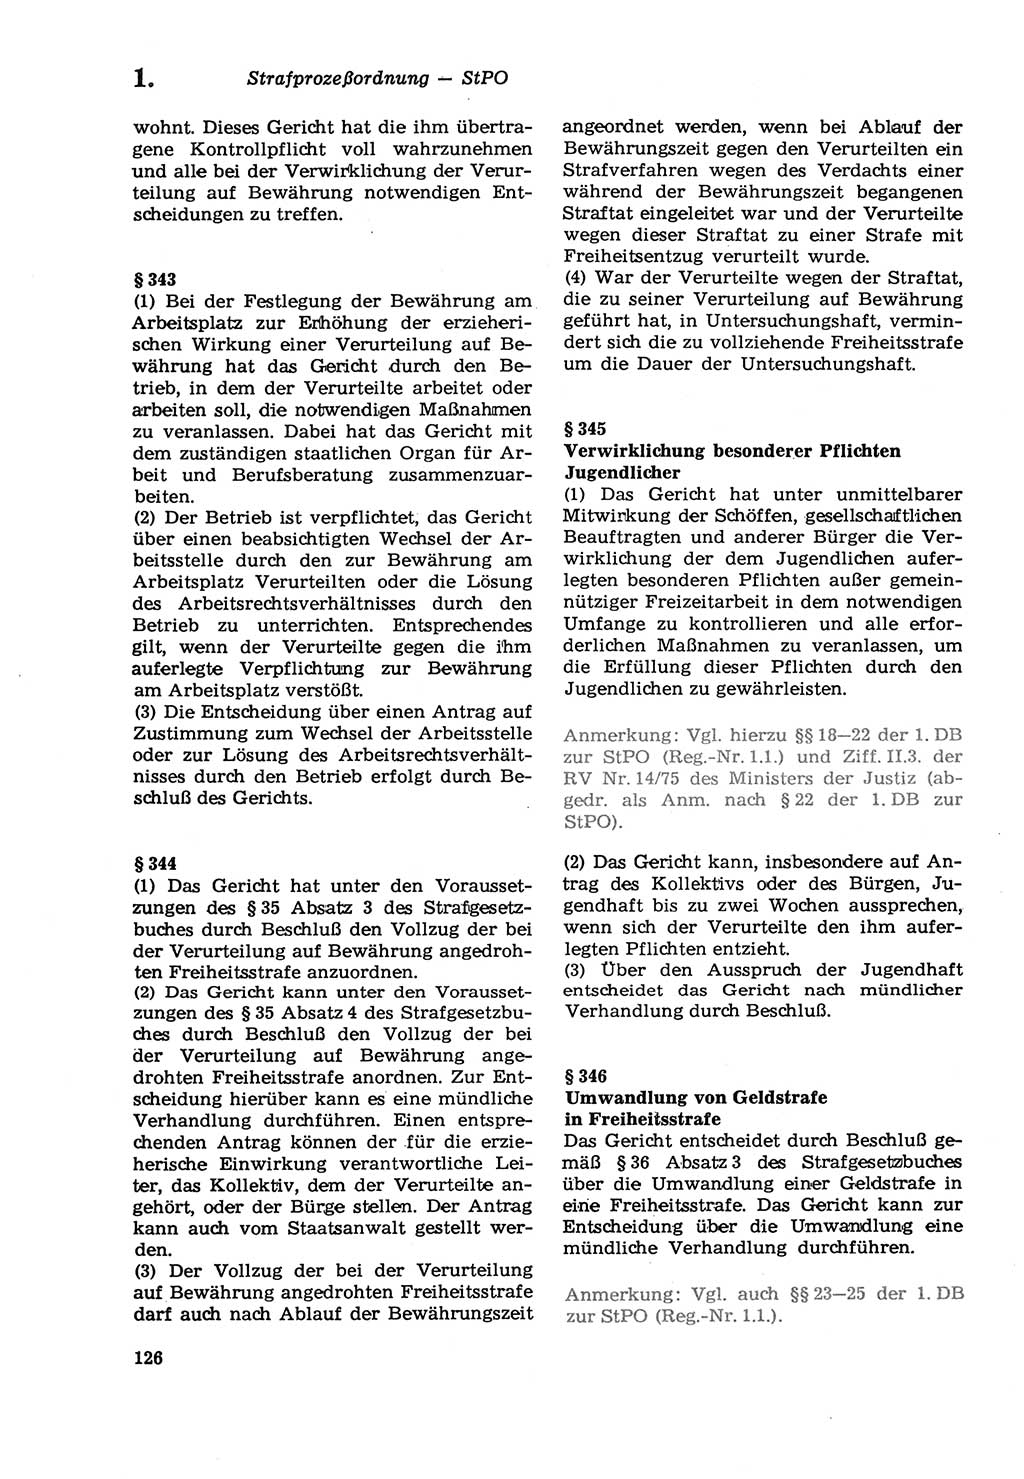 Strafprozeßordnung (StPO) der Deutschen Demokratischen Republik (DDR) sowie angrenzende Gesetze und Bestimmungen 1979, Seite 126 (StPO DDR Ges. Best. 1979, S. 126)